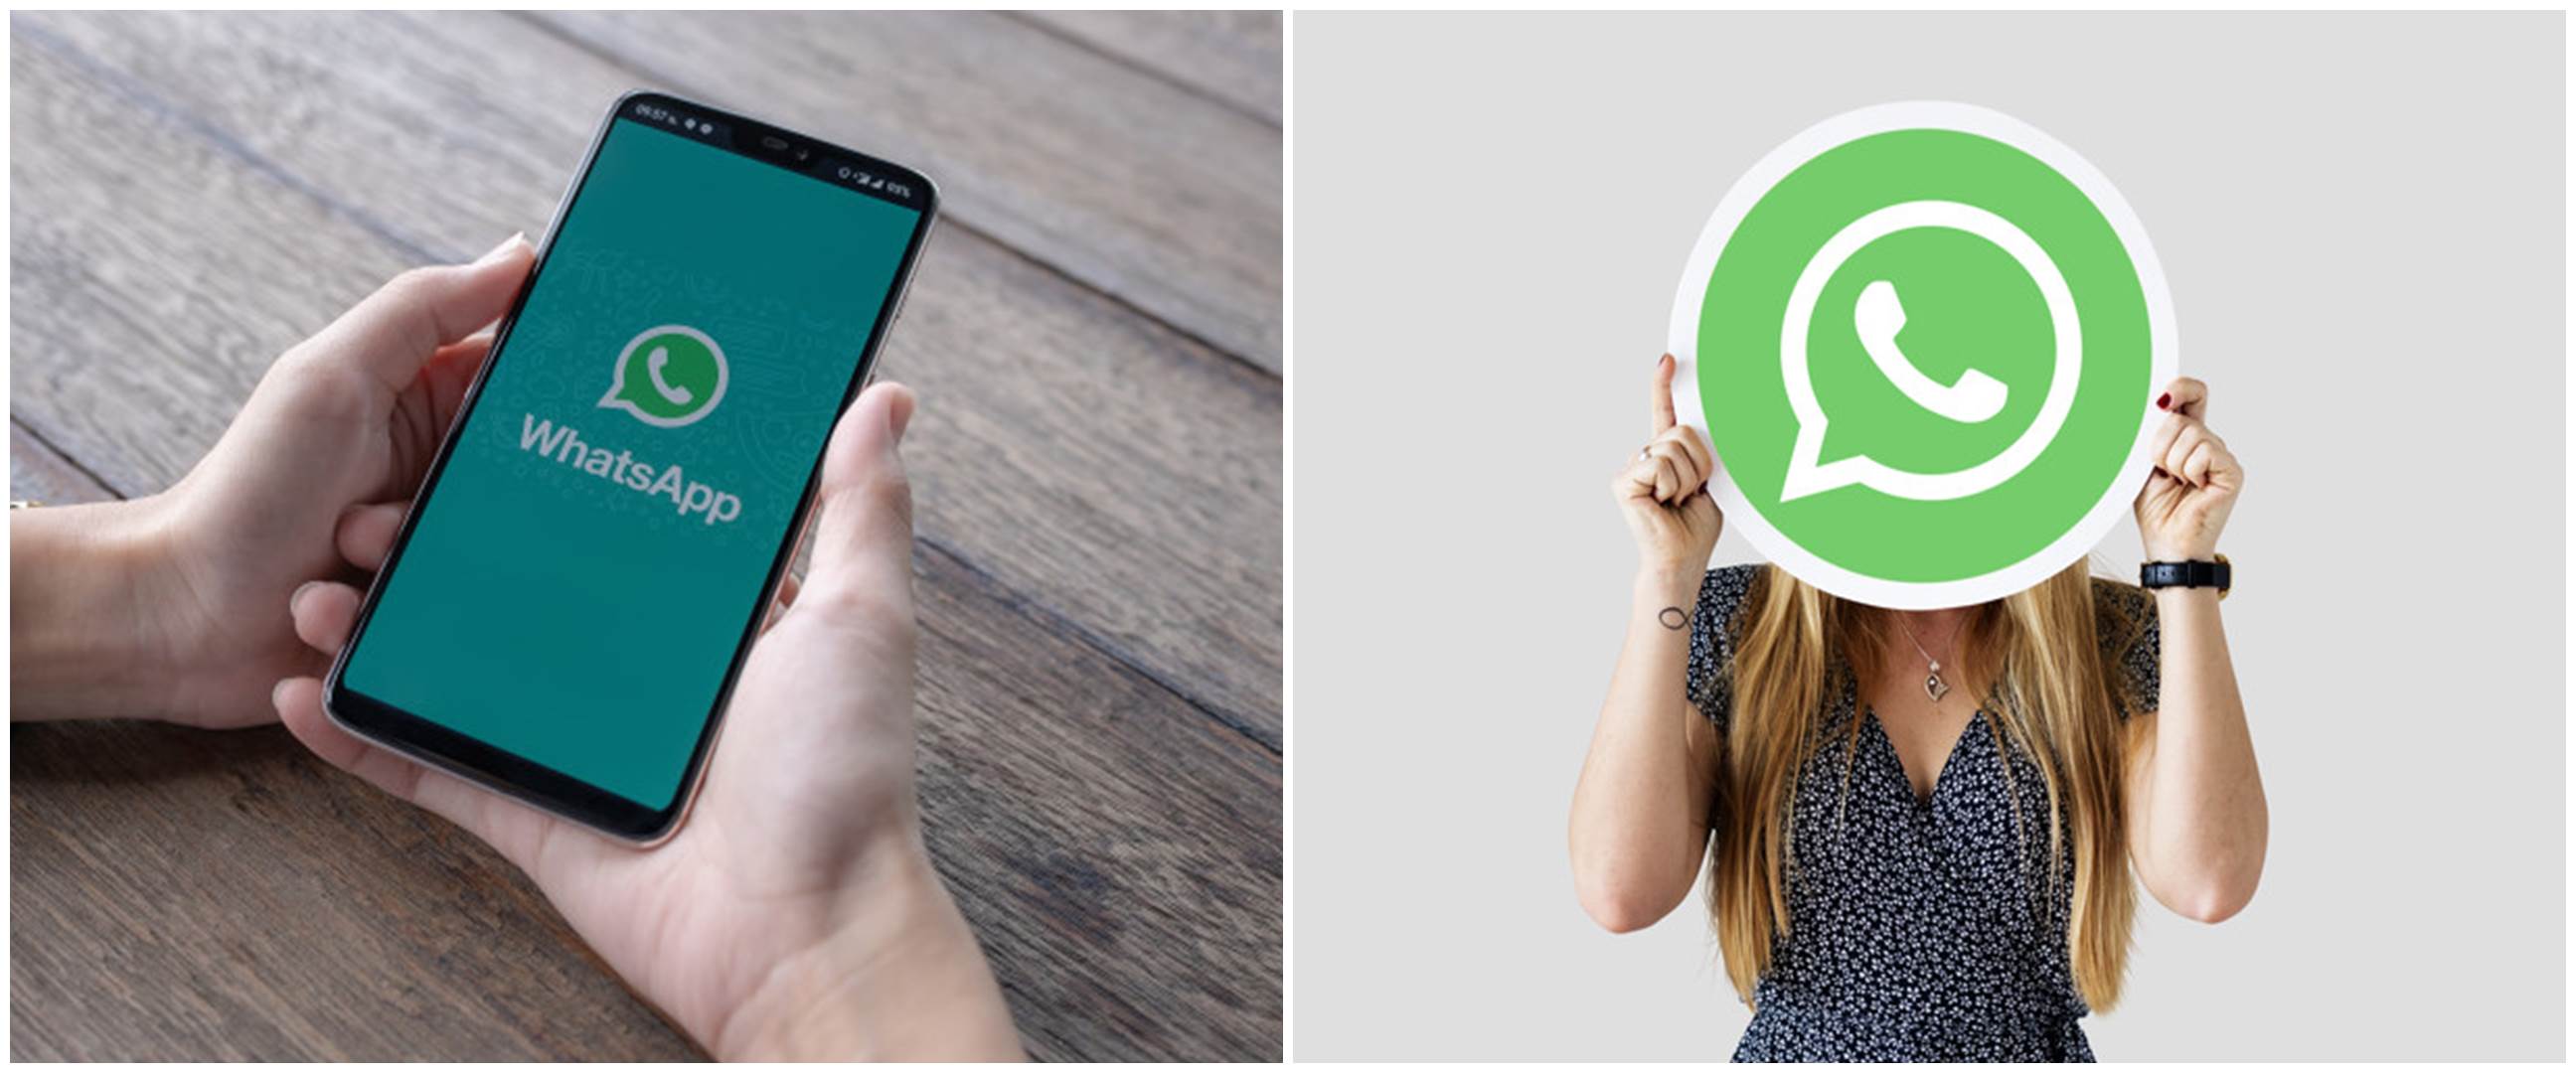 Cara menyimpan nomor di WhatsApp Web, mudah dan praktis